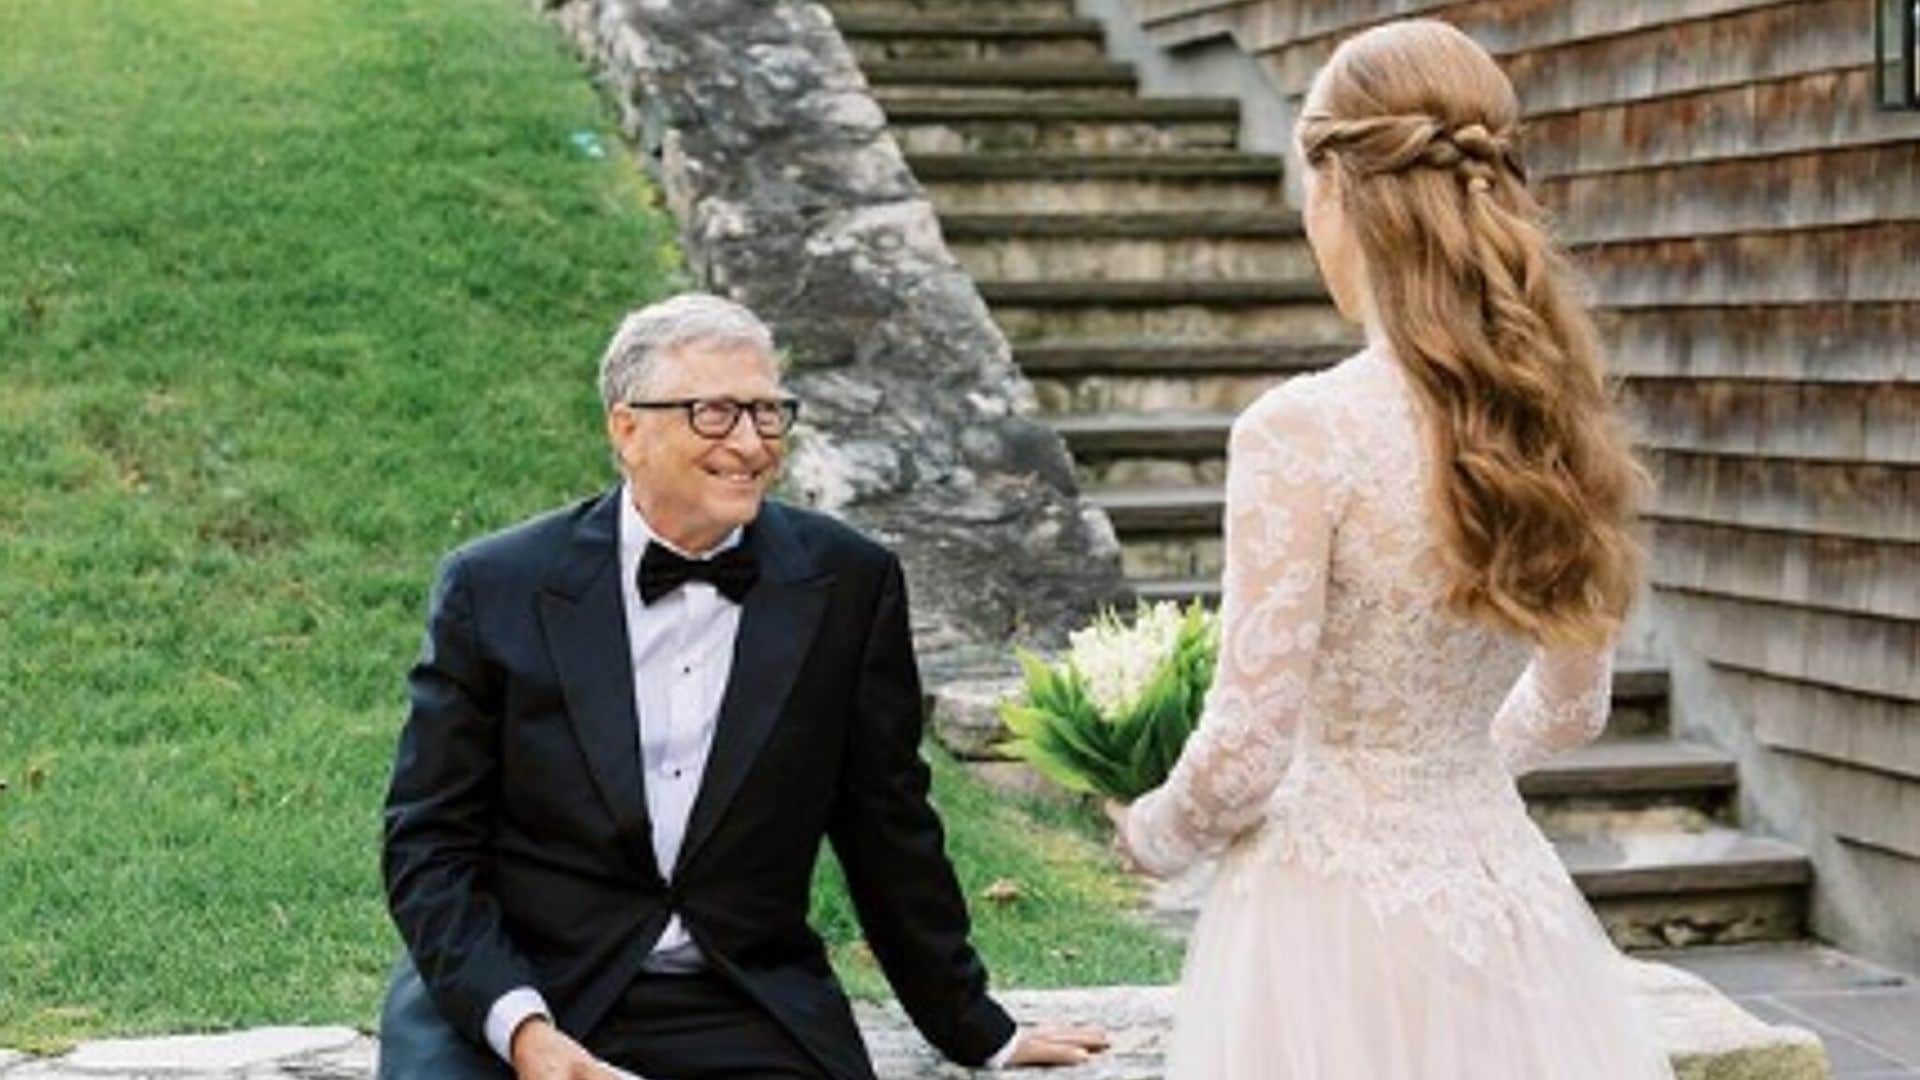 Hija de Bill Gates, Jennifer, comparte un hermoso mensaje en el cumpleaños de papá